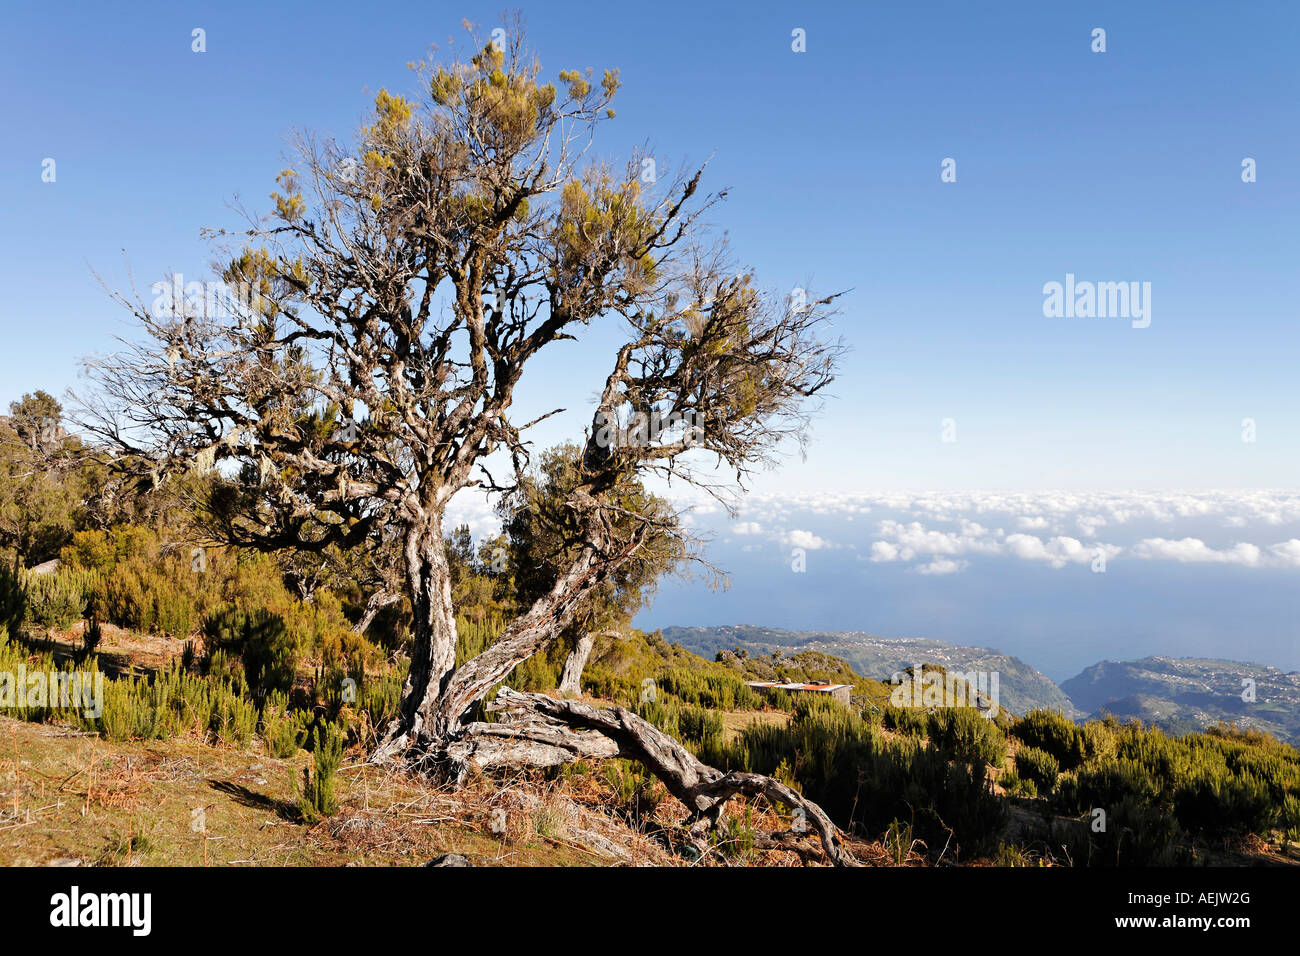 Tree heath (Erica arborea), dont le bois est obtenu à partir de la Bruyère, Achada do Teixeira, Madeira, Portugal Banque D'Images